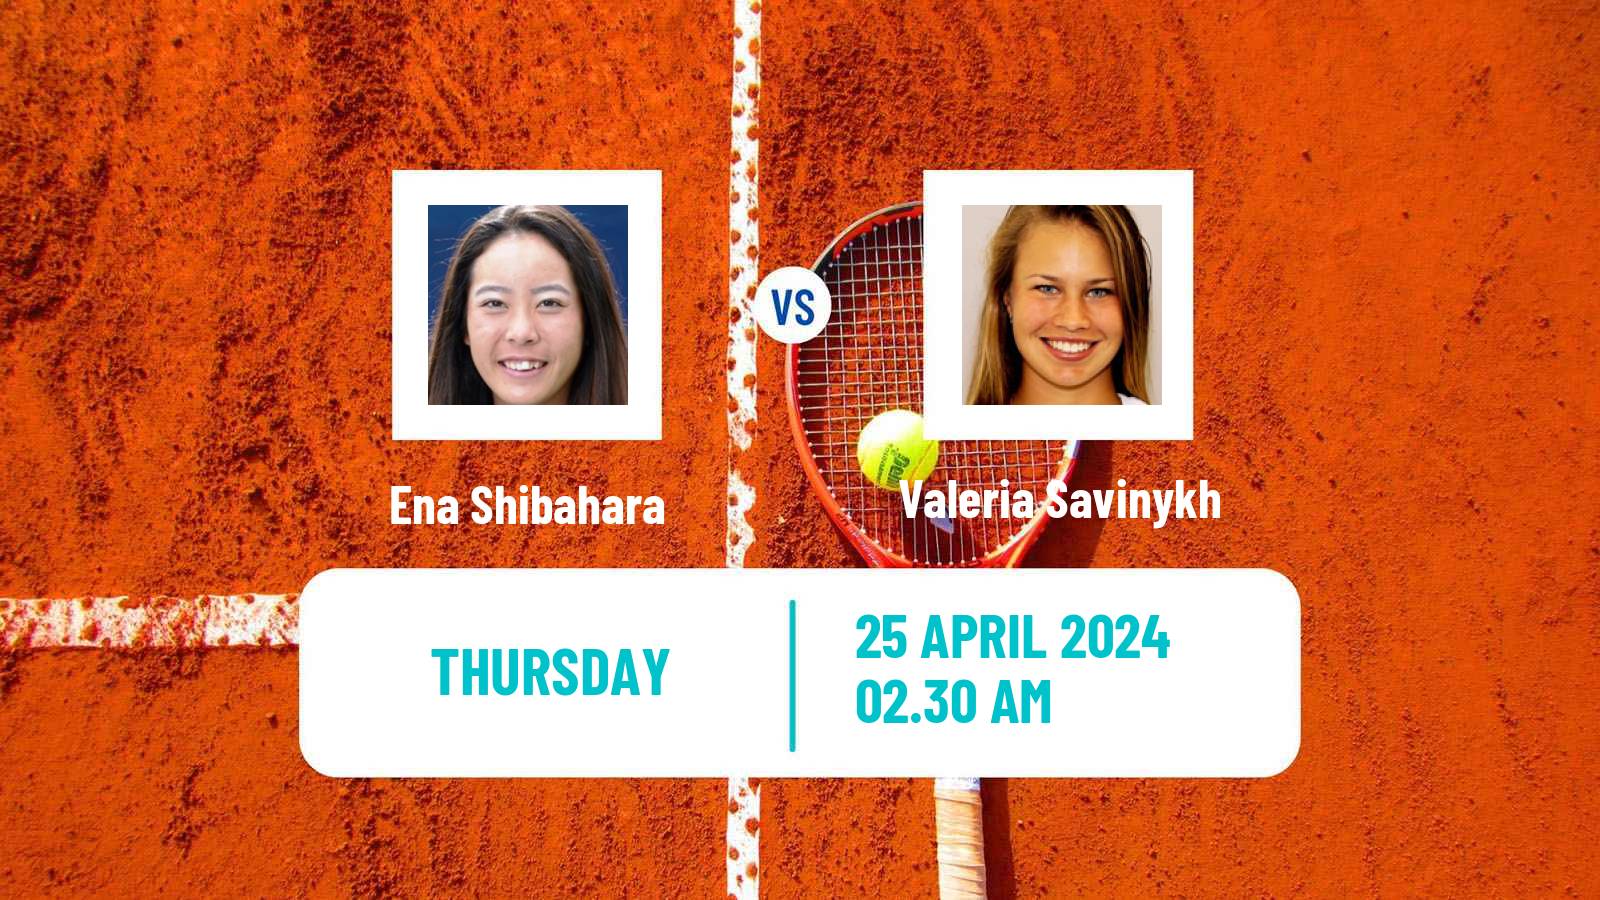 Tennis ITF W100 Tokyo Women Ena Shibahara - Valeria Savinykh